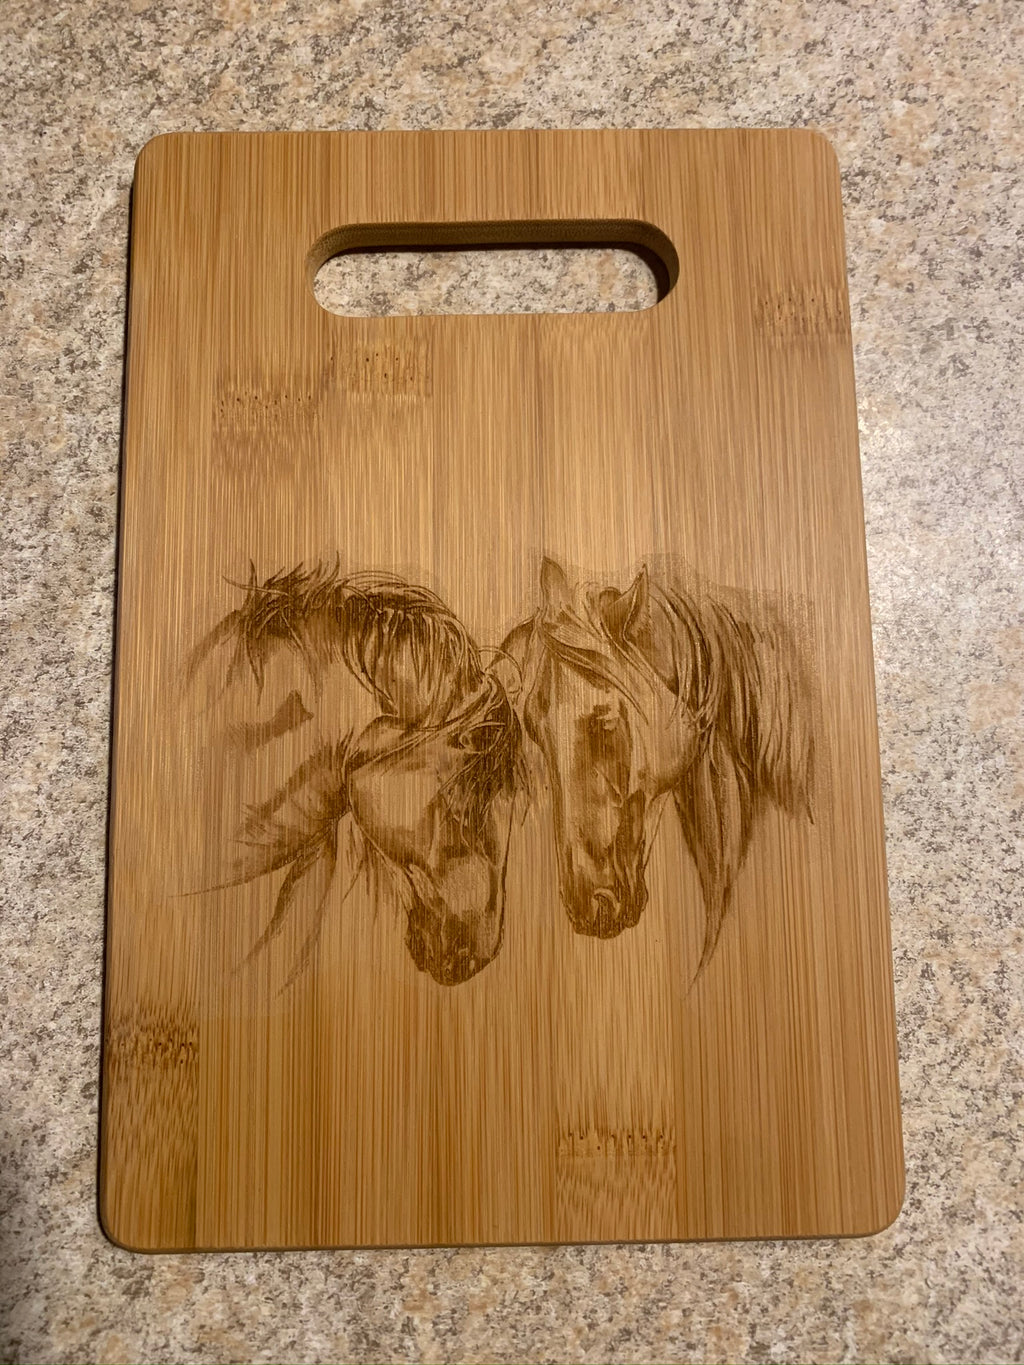 'Friends' Horse Design Bamboo Cutting Board